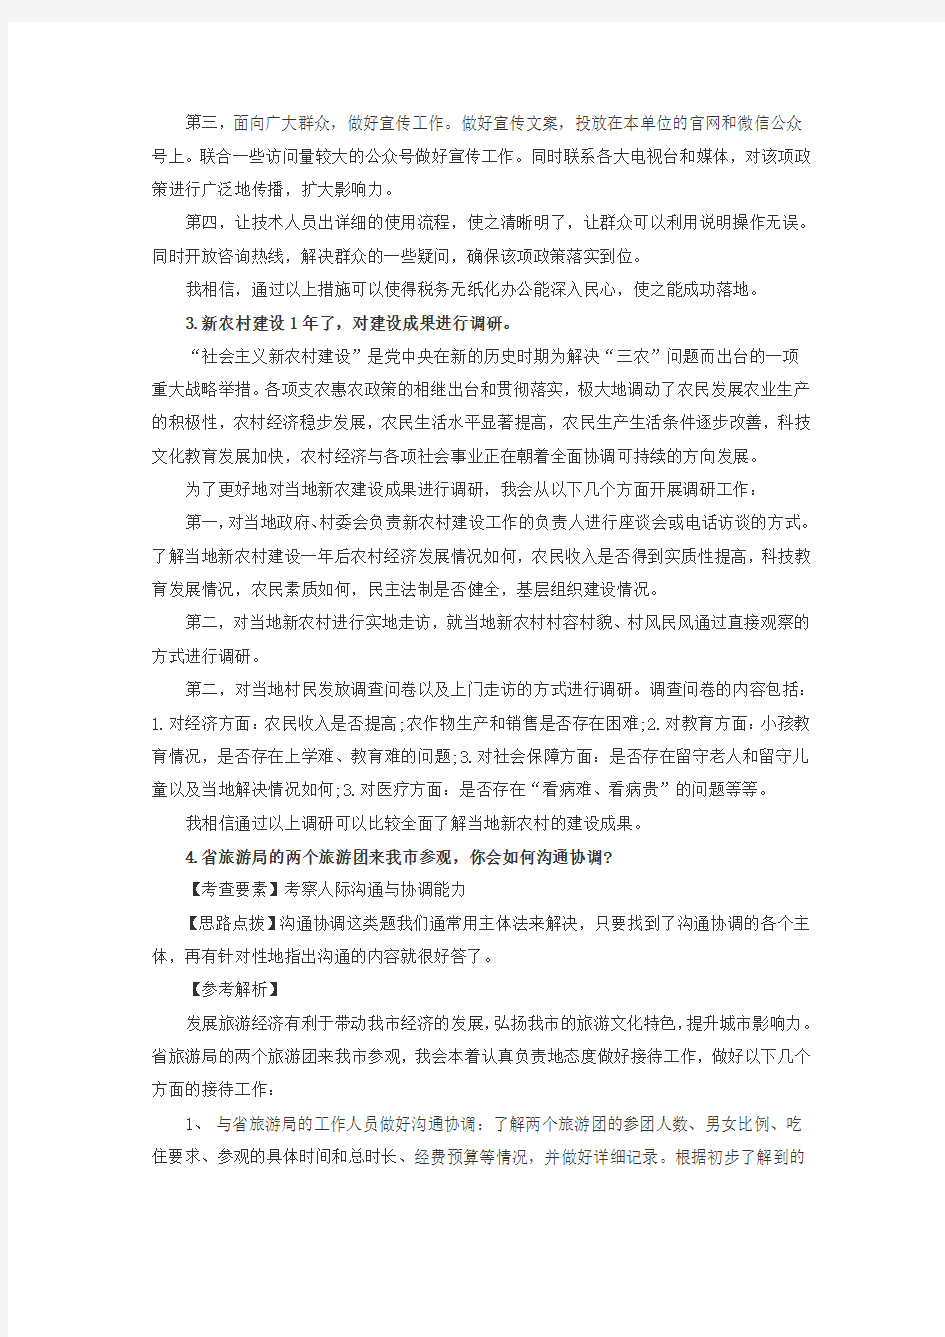 2017年广东省公务员考试面试真题